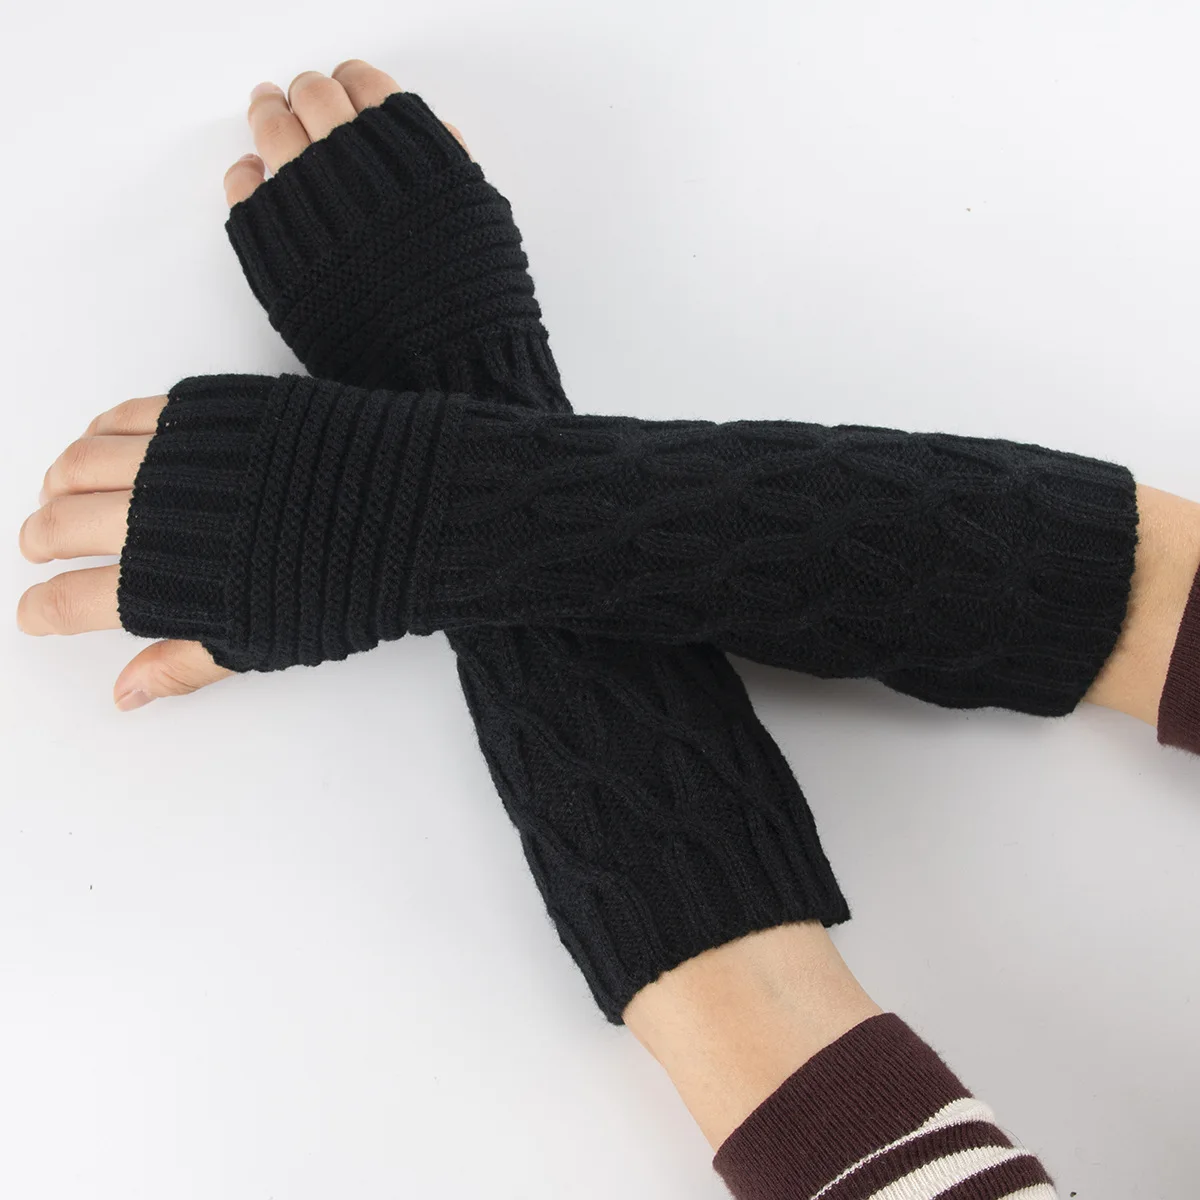 Dámské bezprsté rukavice - pletené, dlouhé (délka 30 cm), chránící celé zápěstí